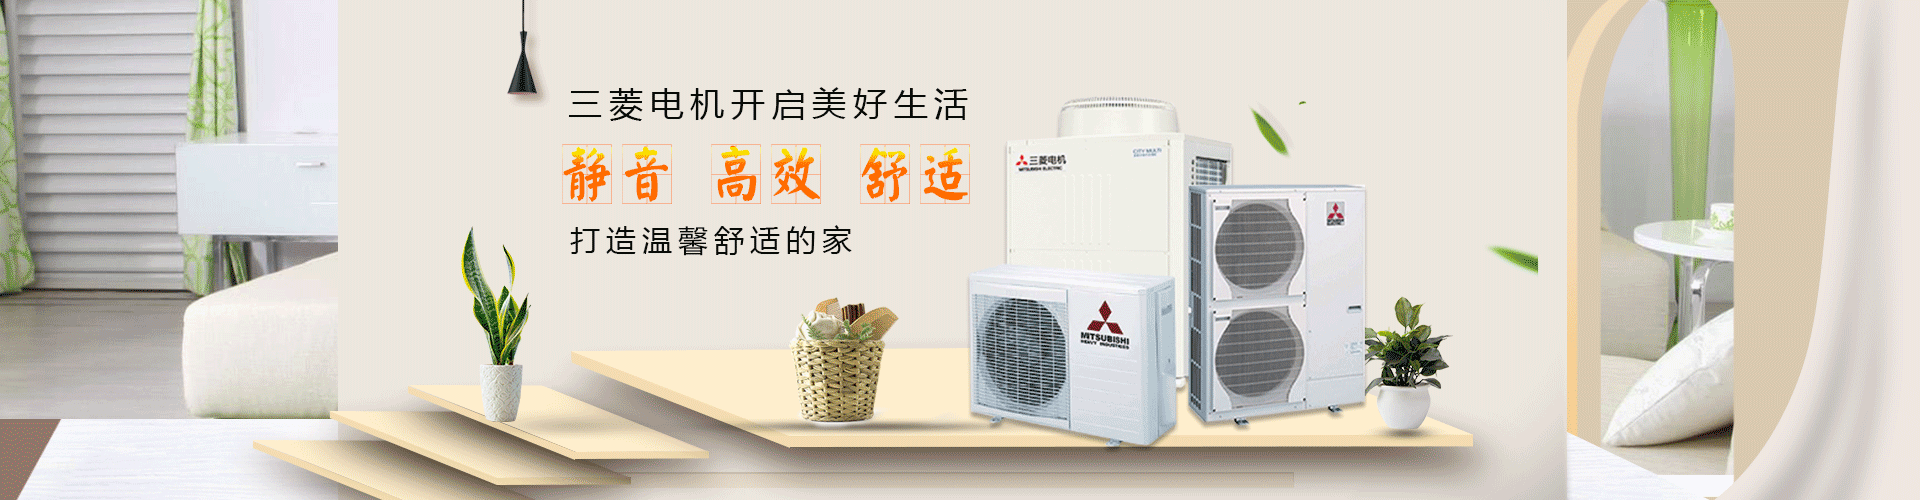 三菱电机中央空调安装公司